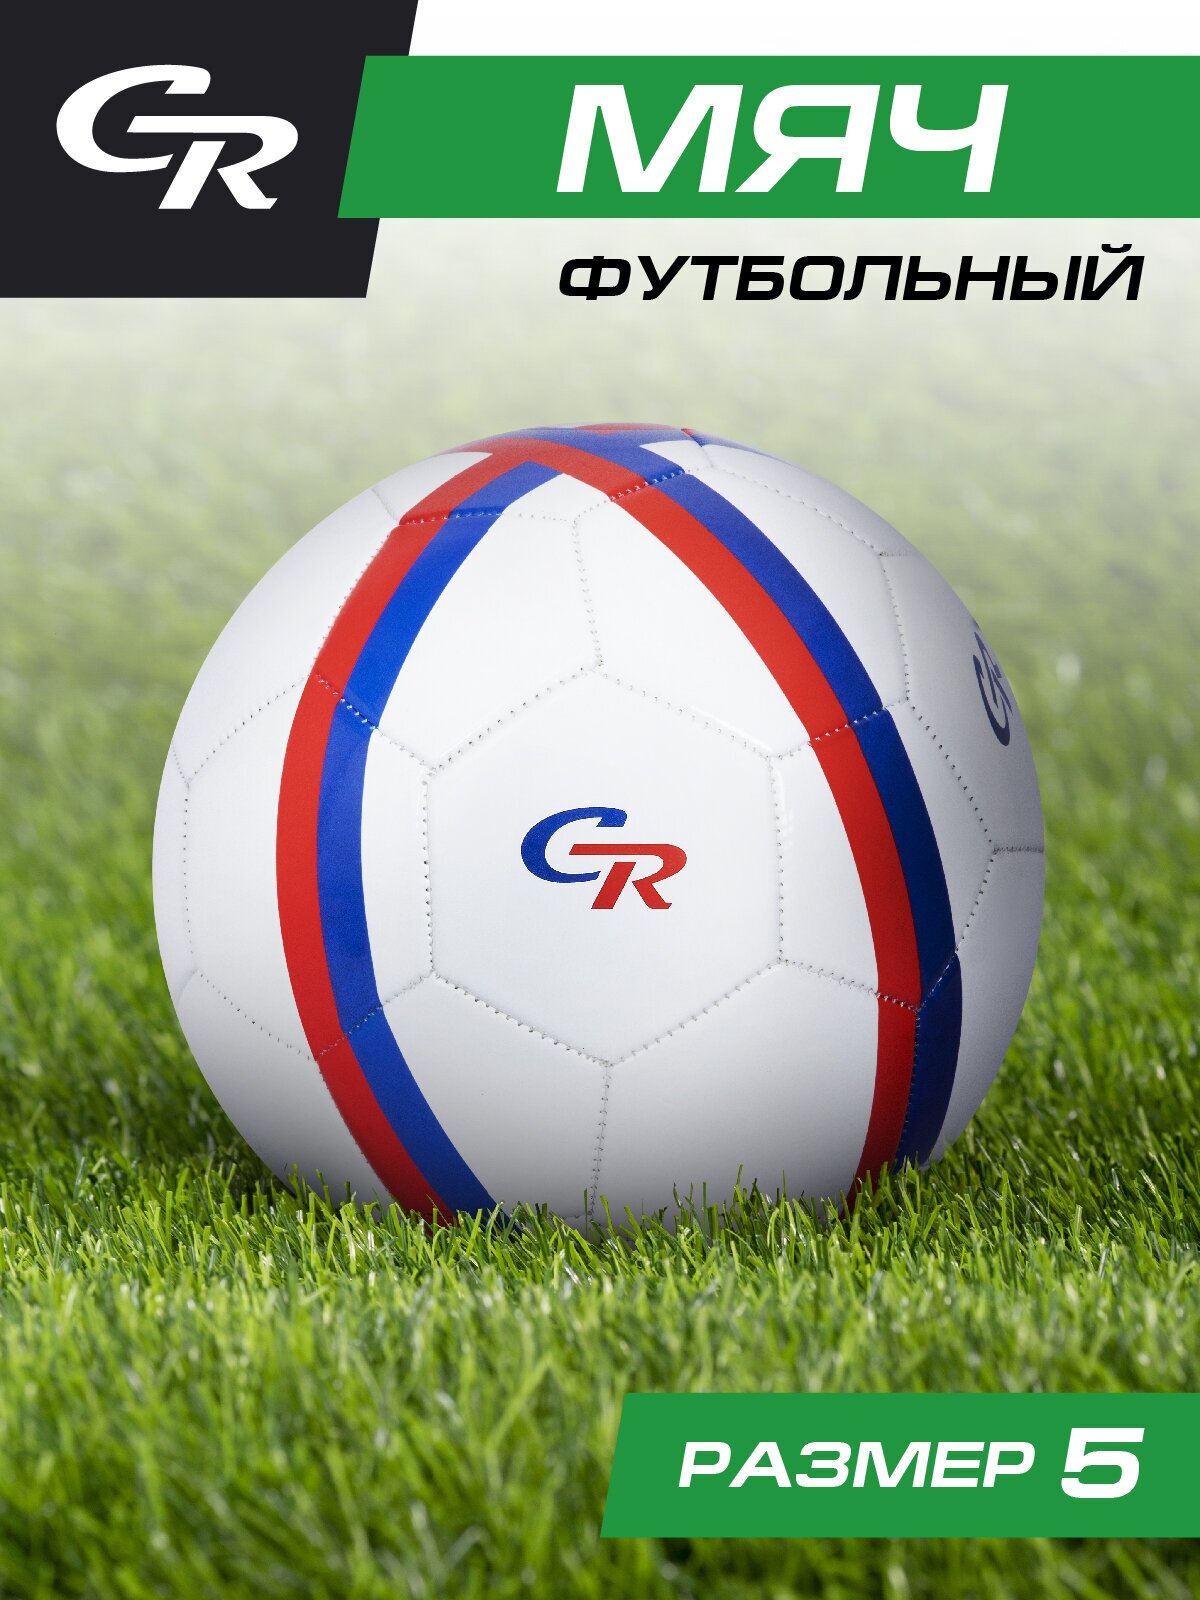 Мяч футбольный ТМ City Ride 3-слойный сшитые панели ПВХ размер 5 диаметр 22 JB4300121